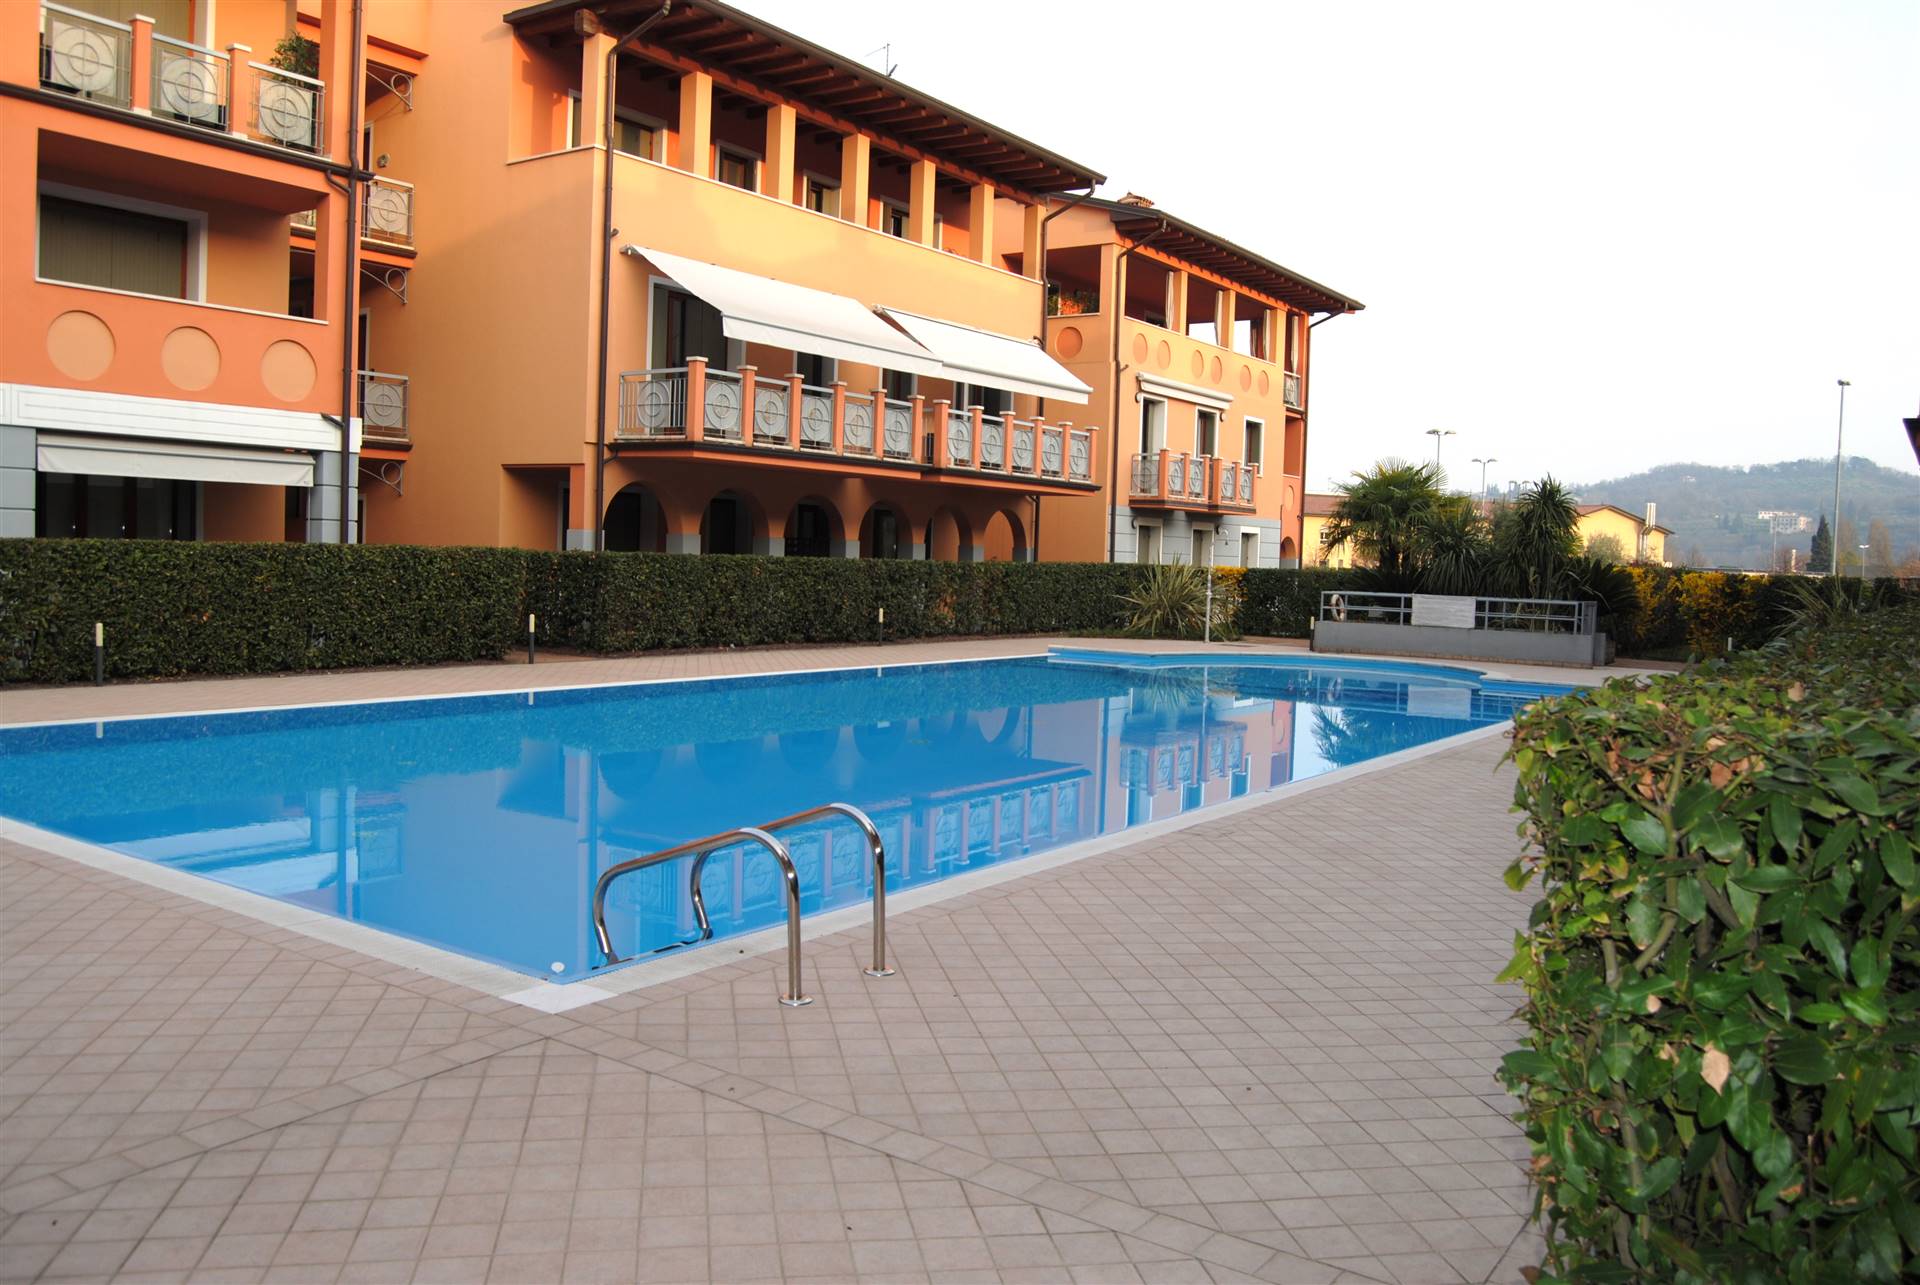 In zona centrale comoda al centro e al lago, in elegante complesso residenziale con piscina, vendiamo appartamento a piano terra composto da 